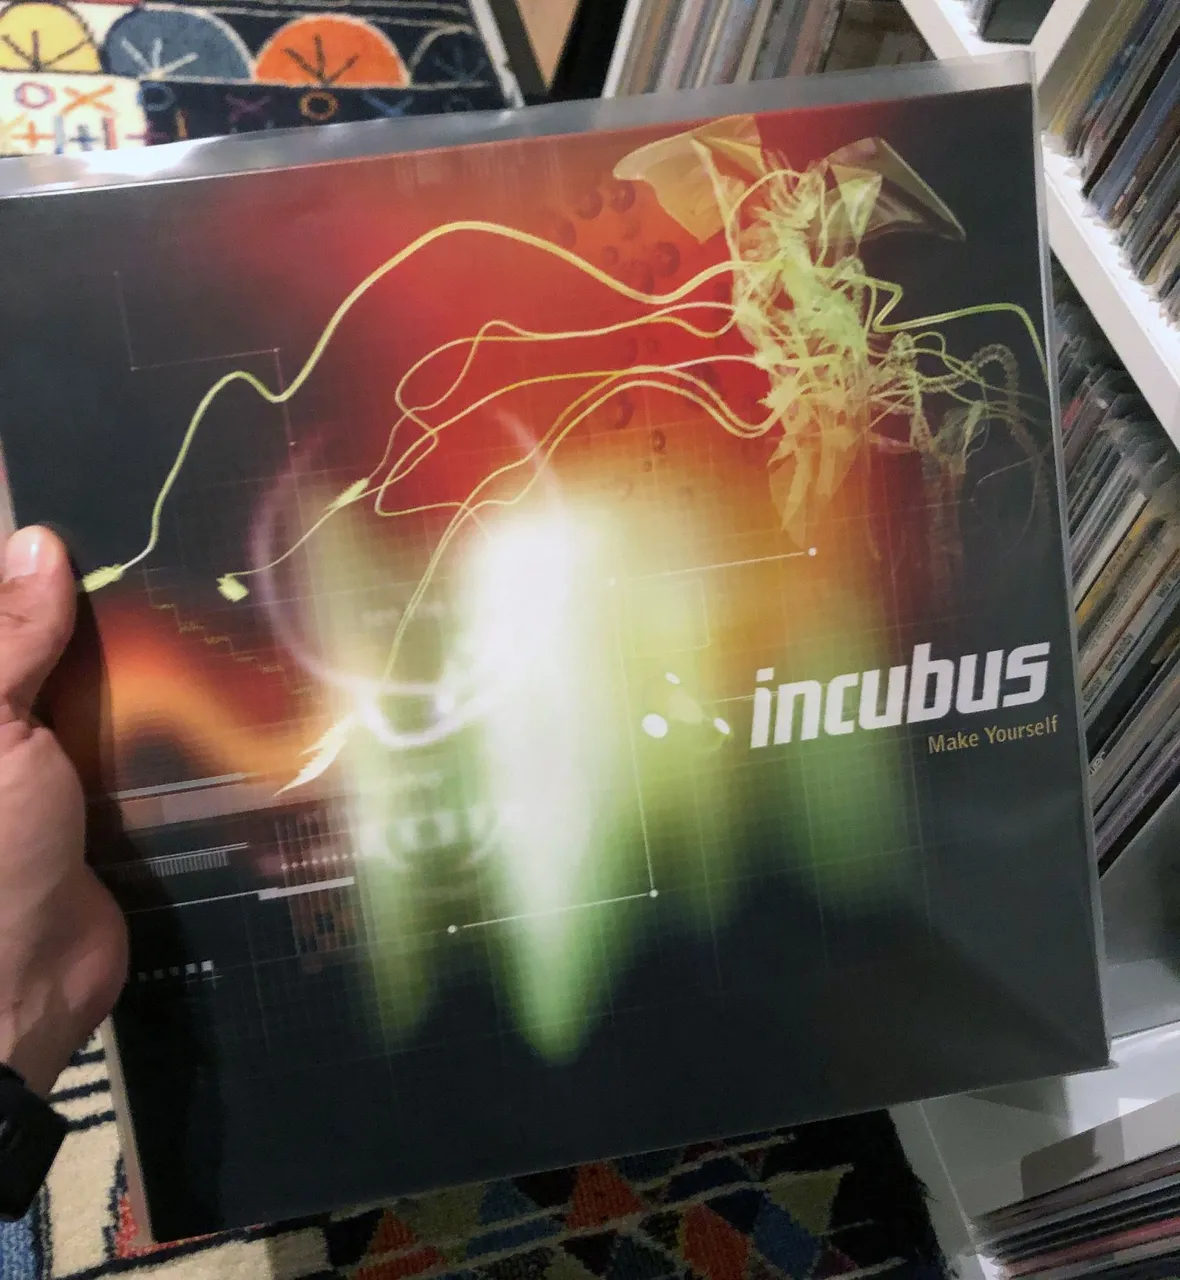 My favorite Incubus album